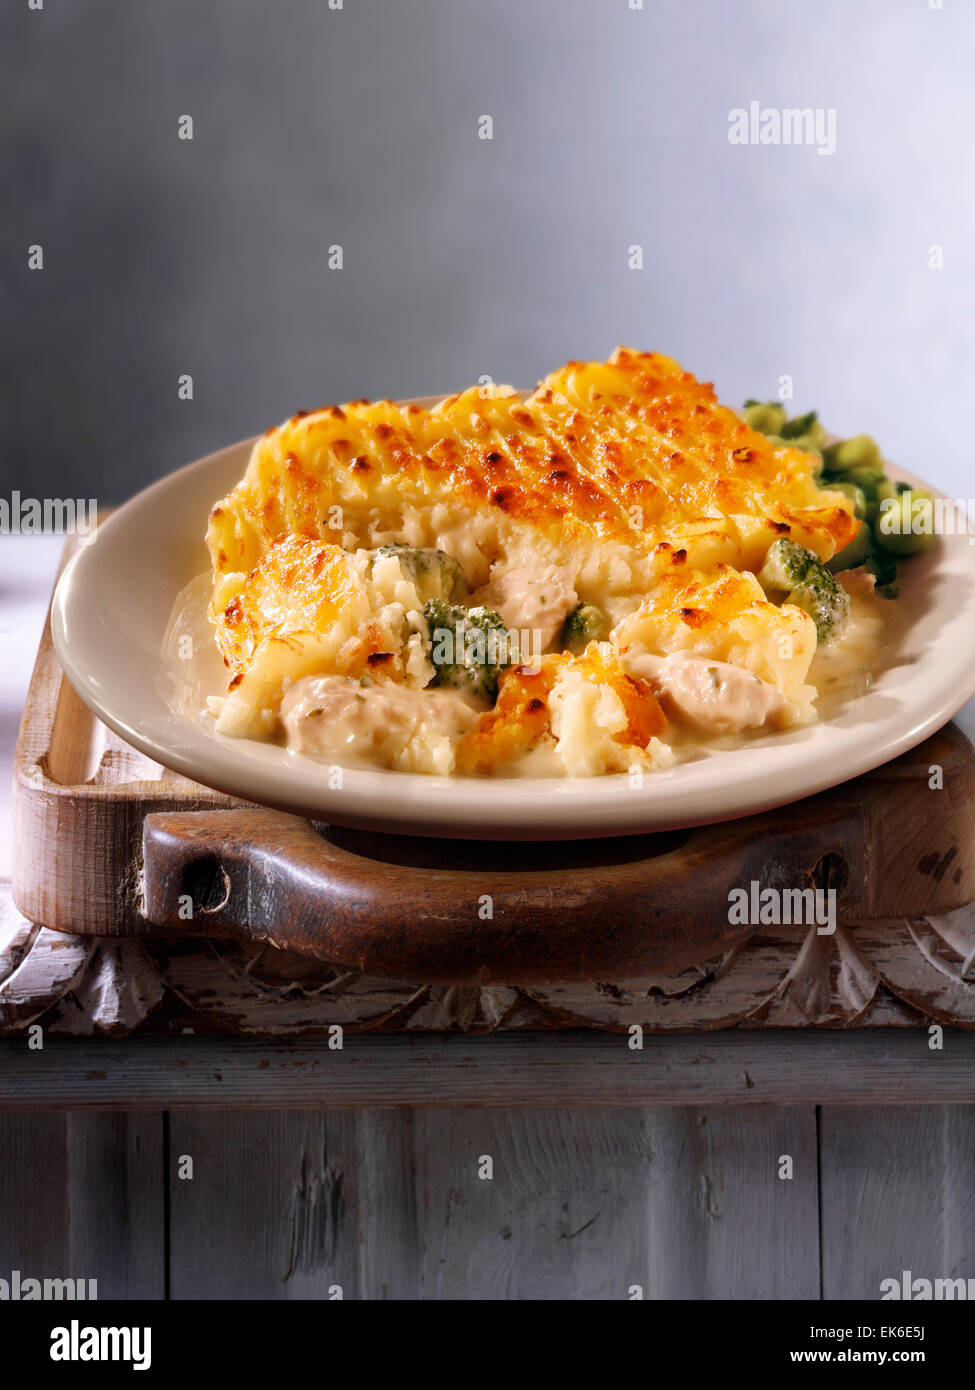 Gekochtes Huhn & Brokkoli Kartoffel Torte Rezept auf einer Platte in einem rustikalen Tisch serviert. Stockfoto